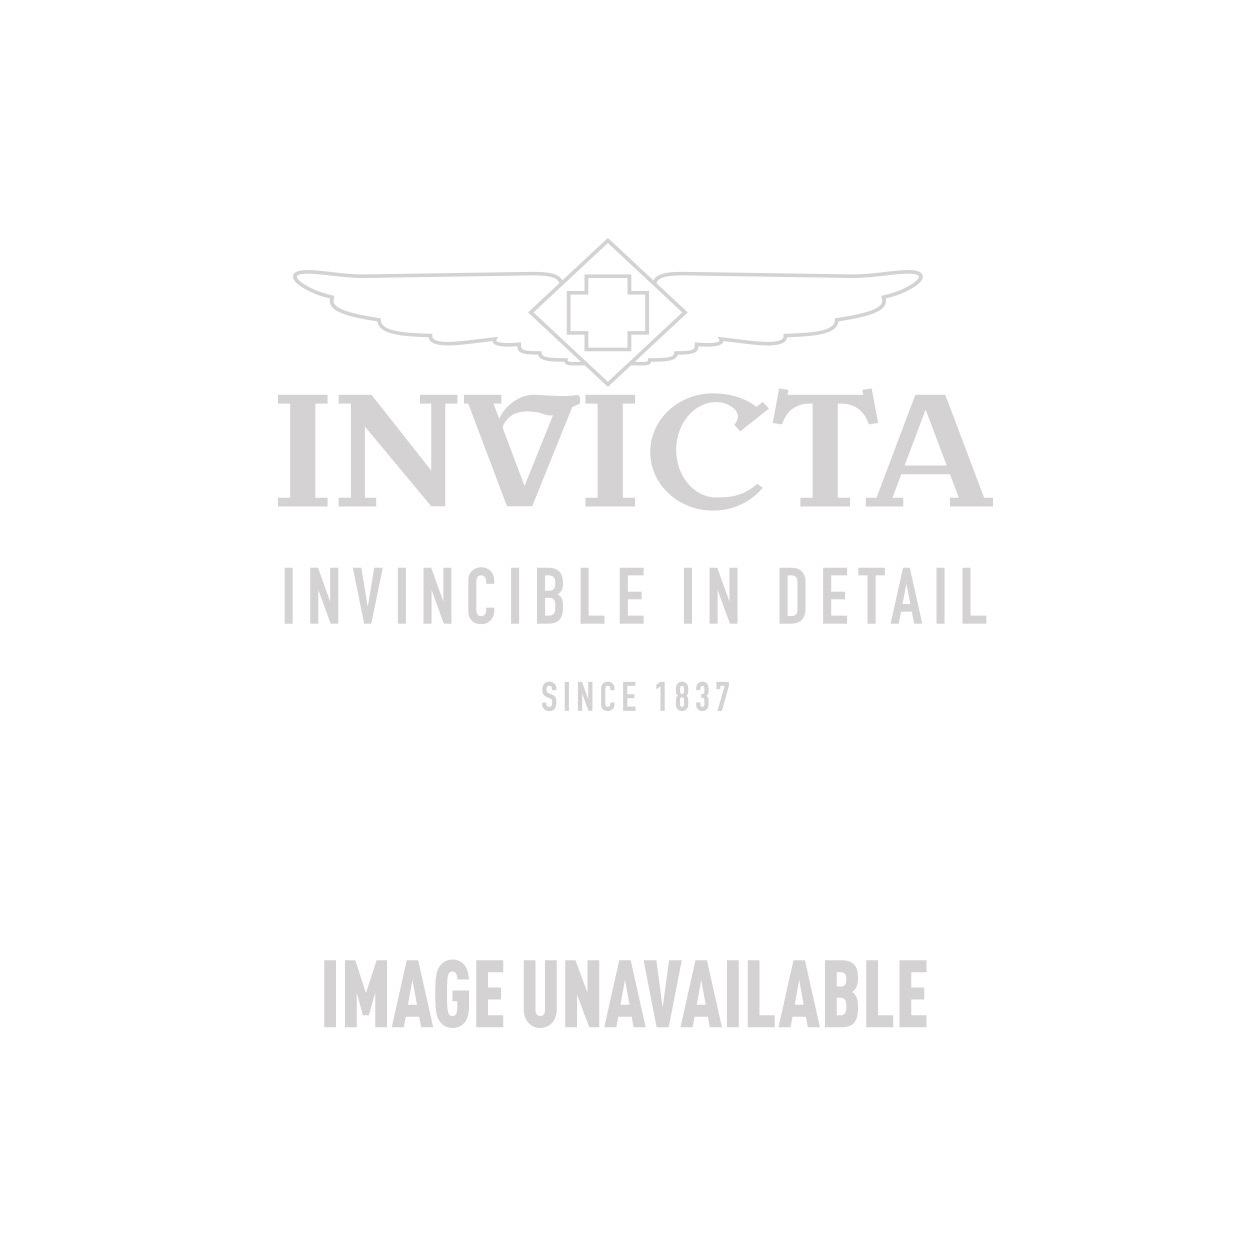 Invicta Model 29011